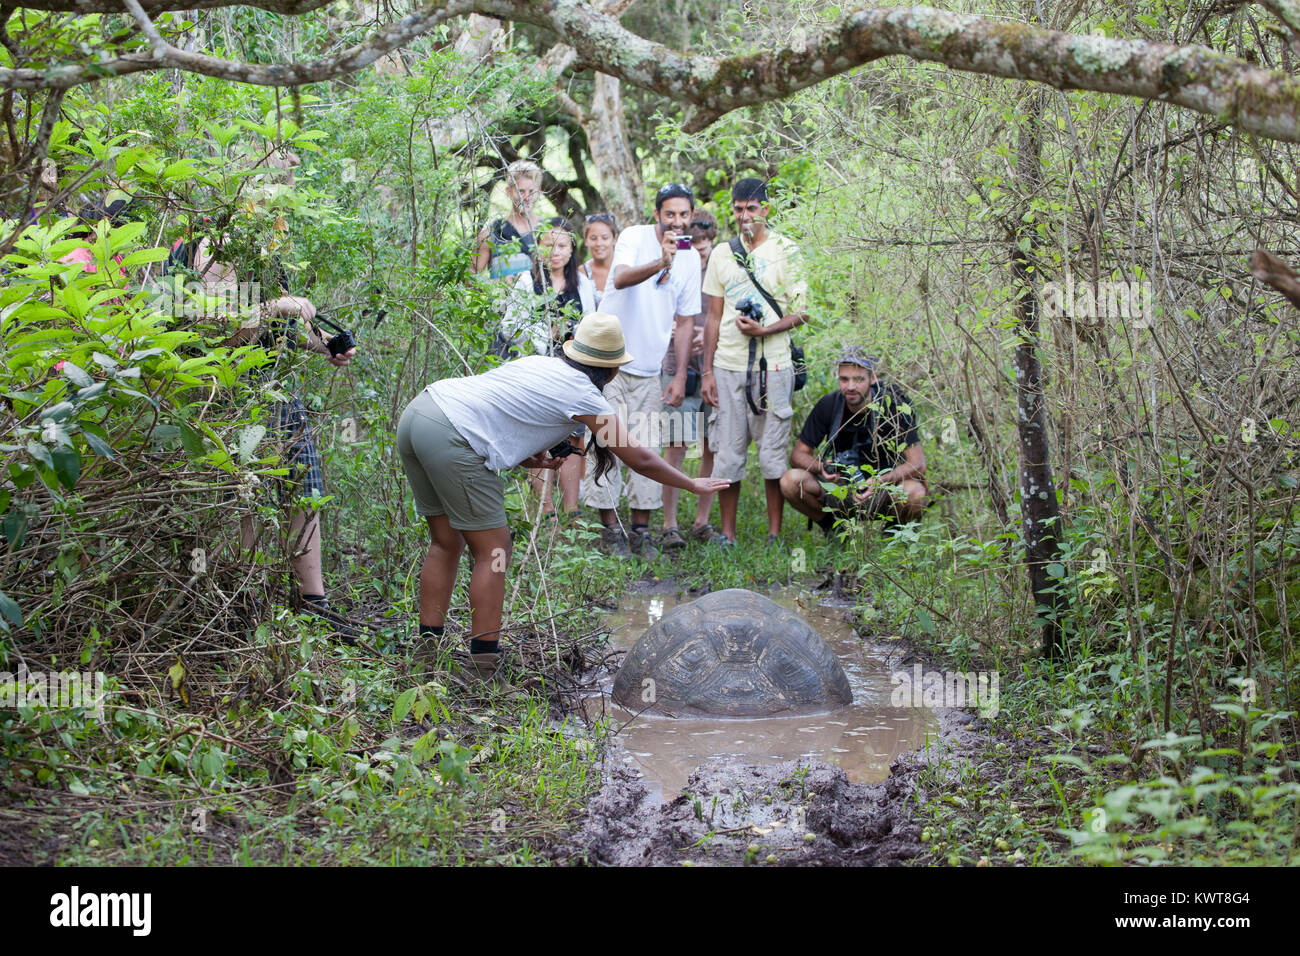 Les touristes photographier une tortue géante des Galapagos (Chelonoidis nigra porteri). (L'île de Santa Cruz, Galapagos). Banque D'Images